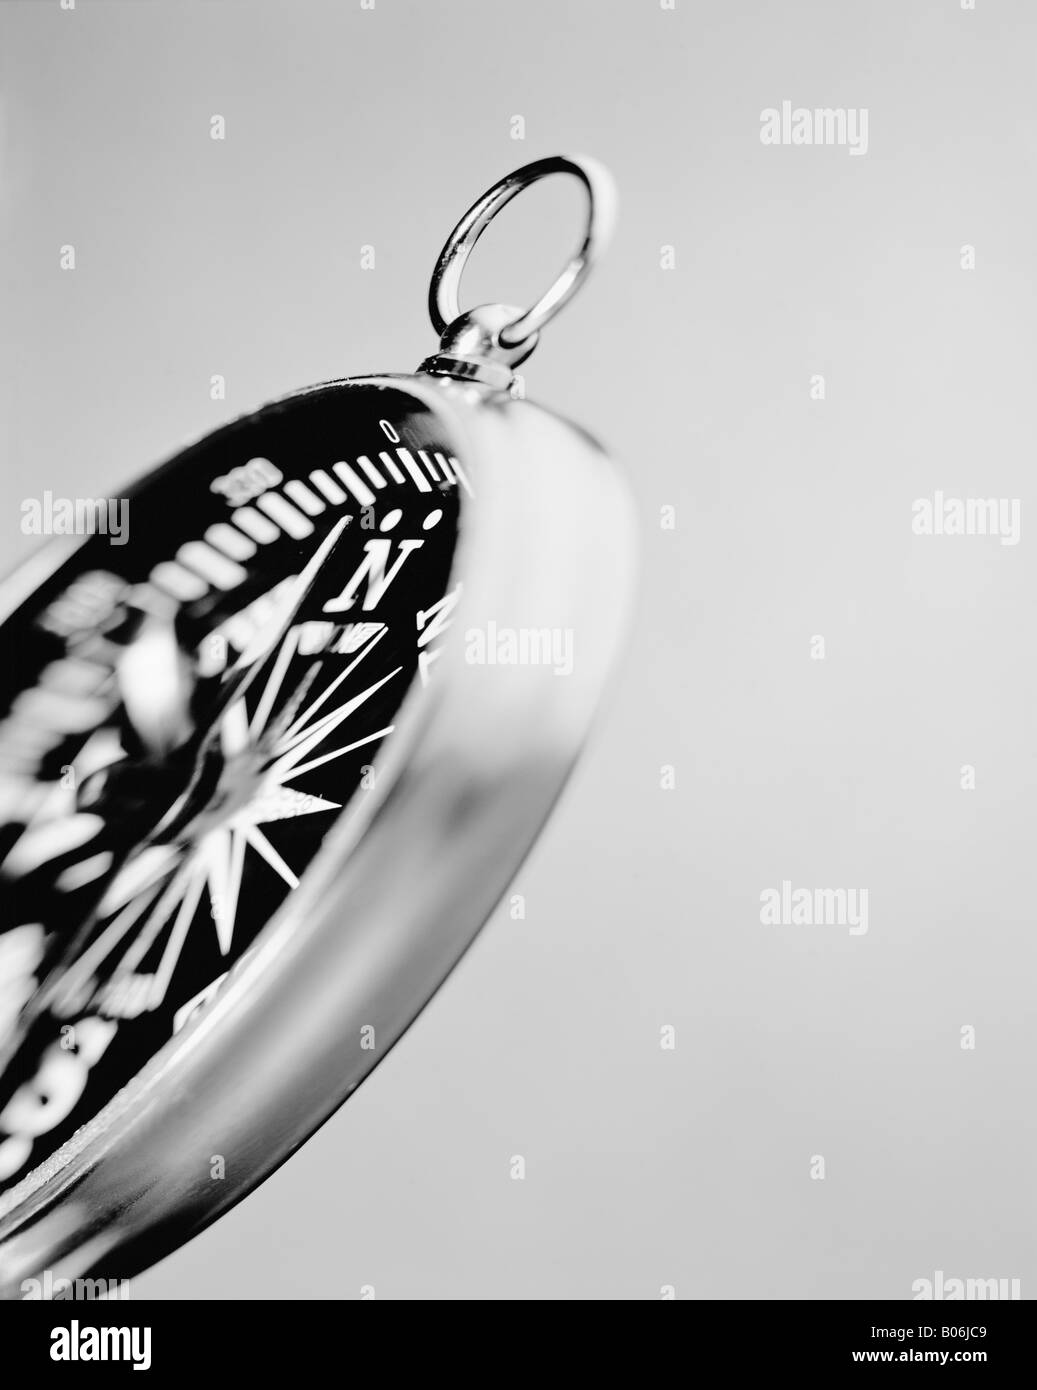 Immagine monocromatica di una bussola contro uno sfondo grigio Foto Stock